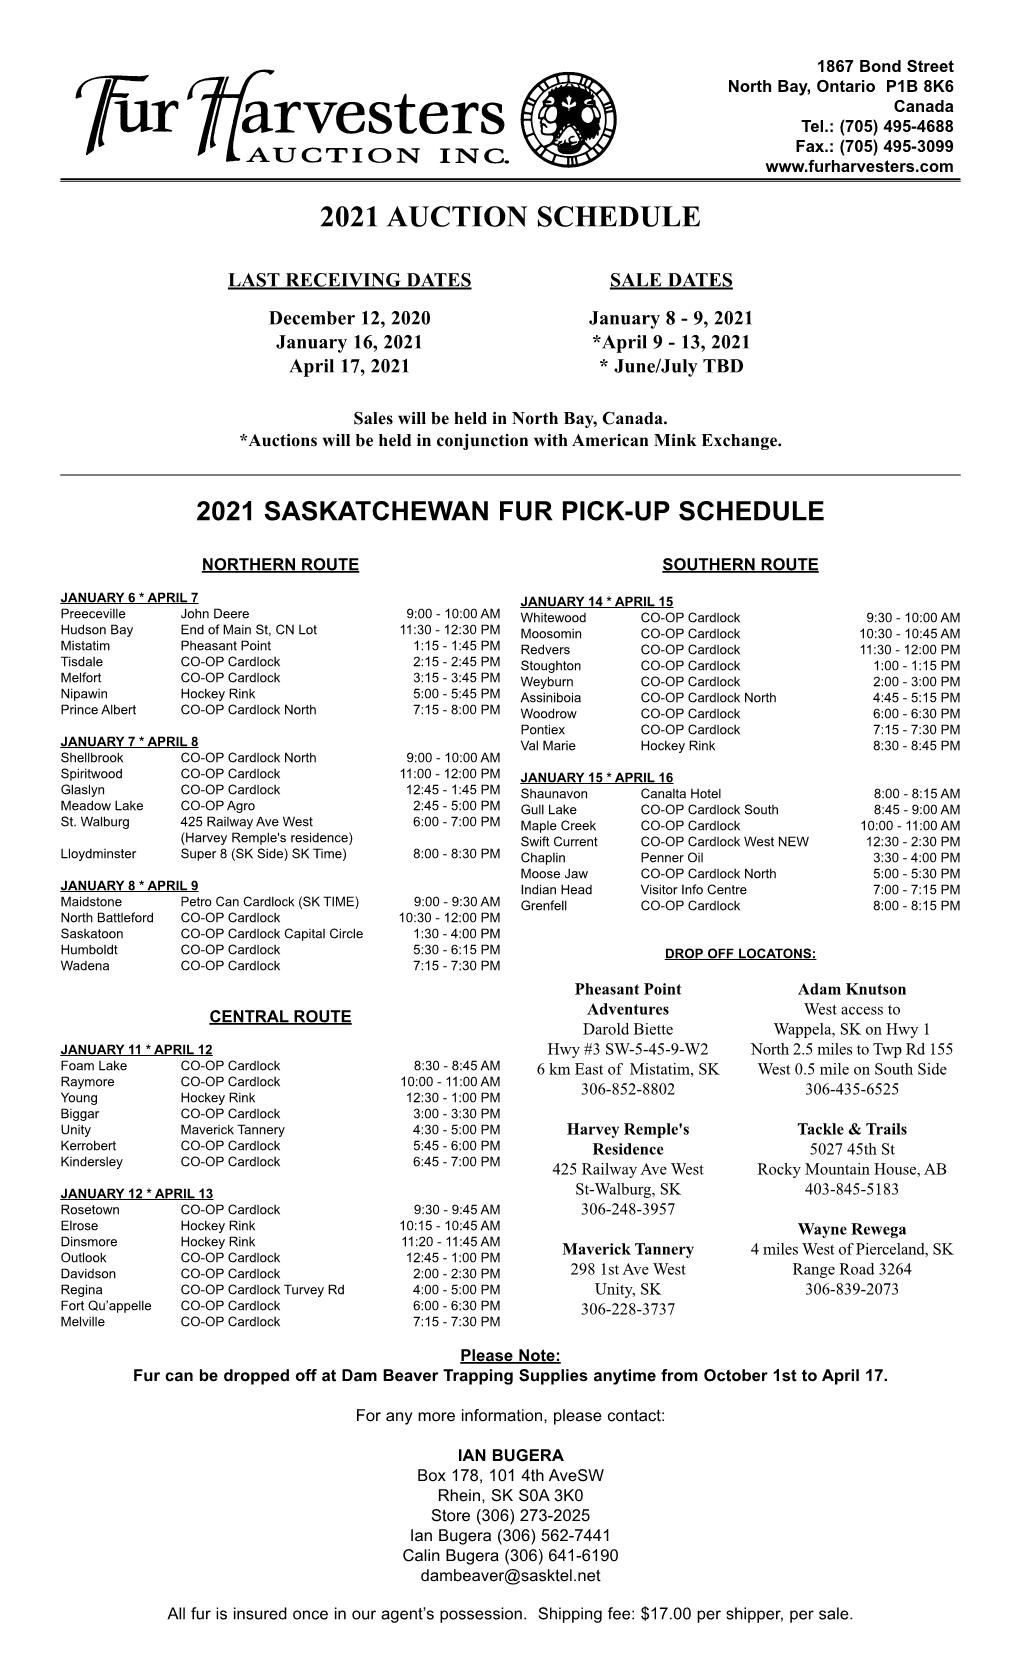 Saskatchewan Fur Pick-Up Schedule